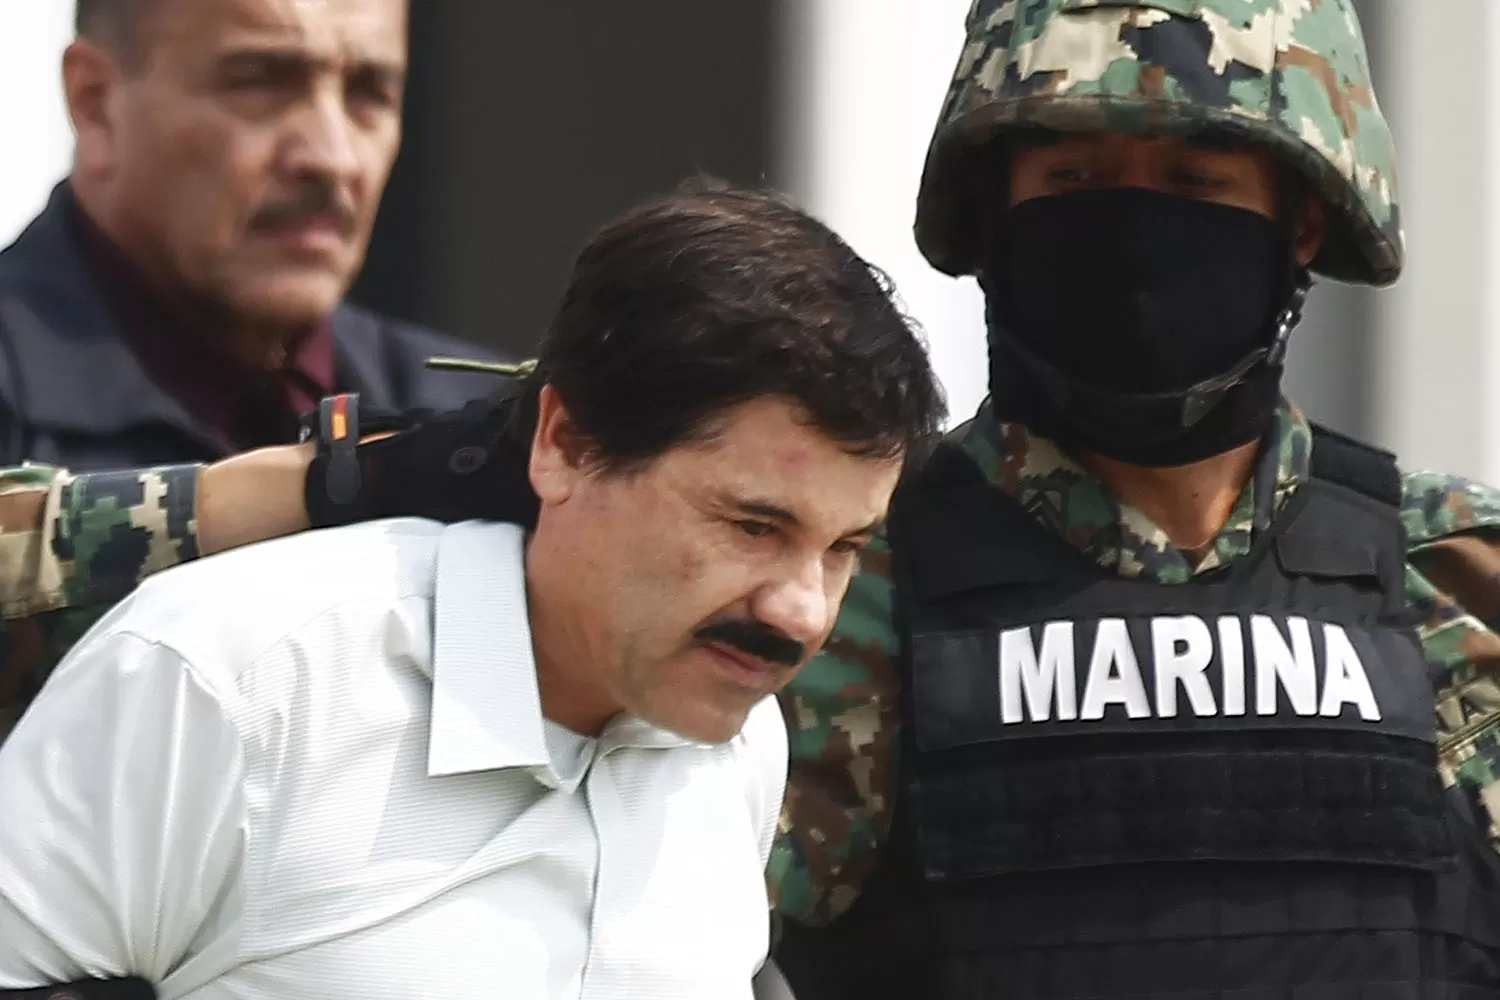 LÍDER PRESO. El Chapo Guzmán fue recapturado en enero de este año. REUTERS